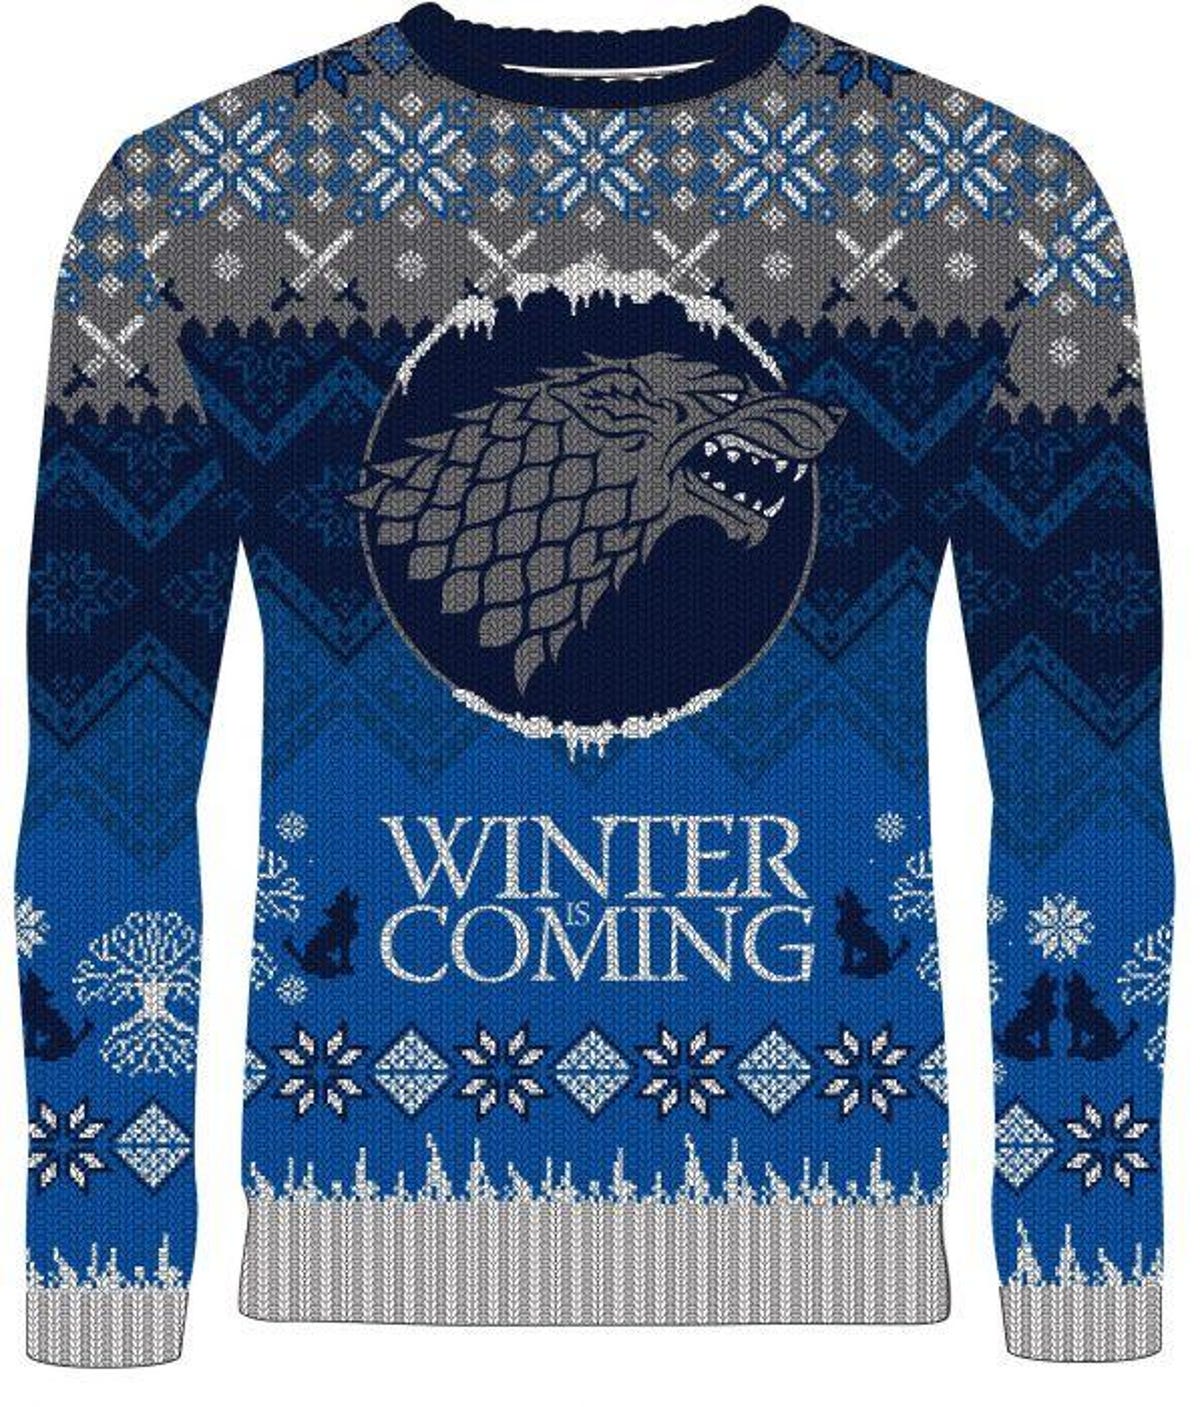 Winter is coming Game of Thrones sweater sweatshirt